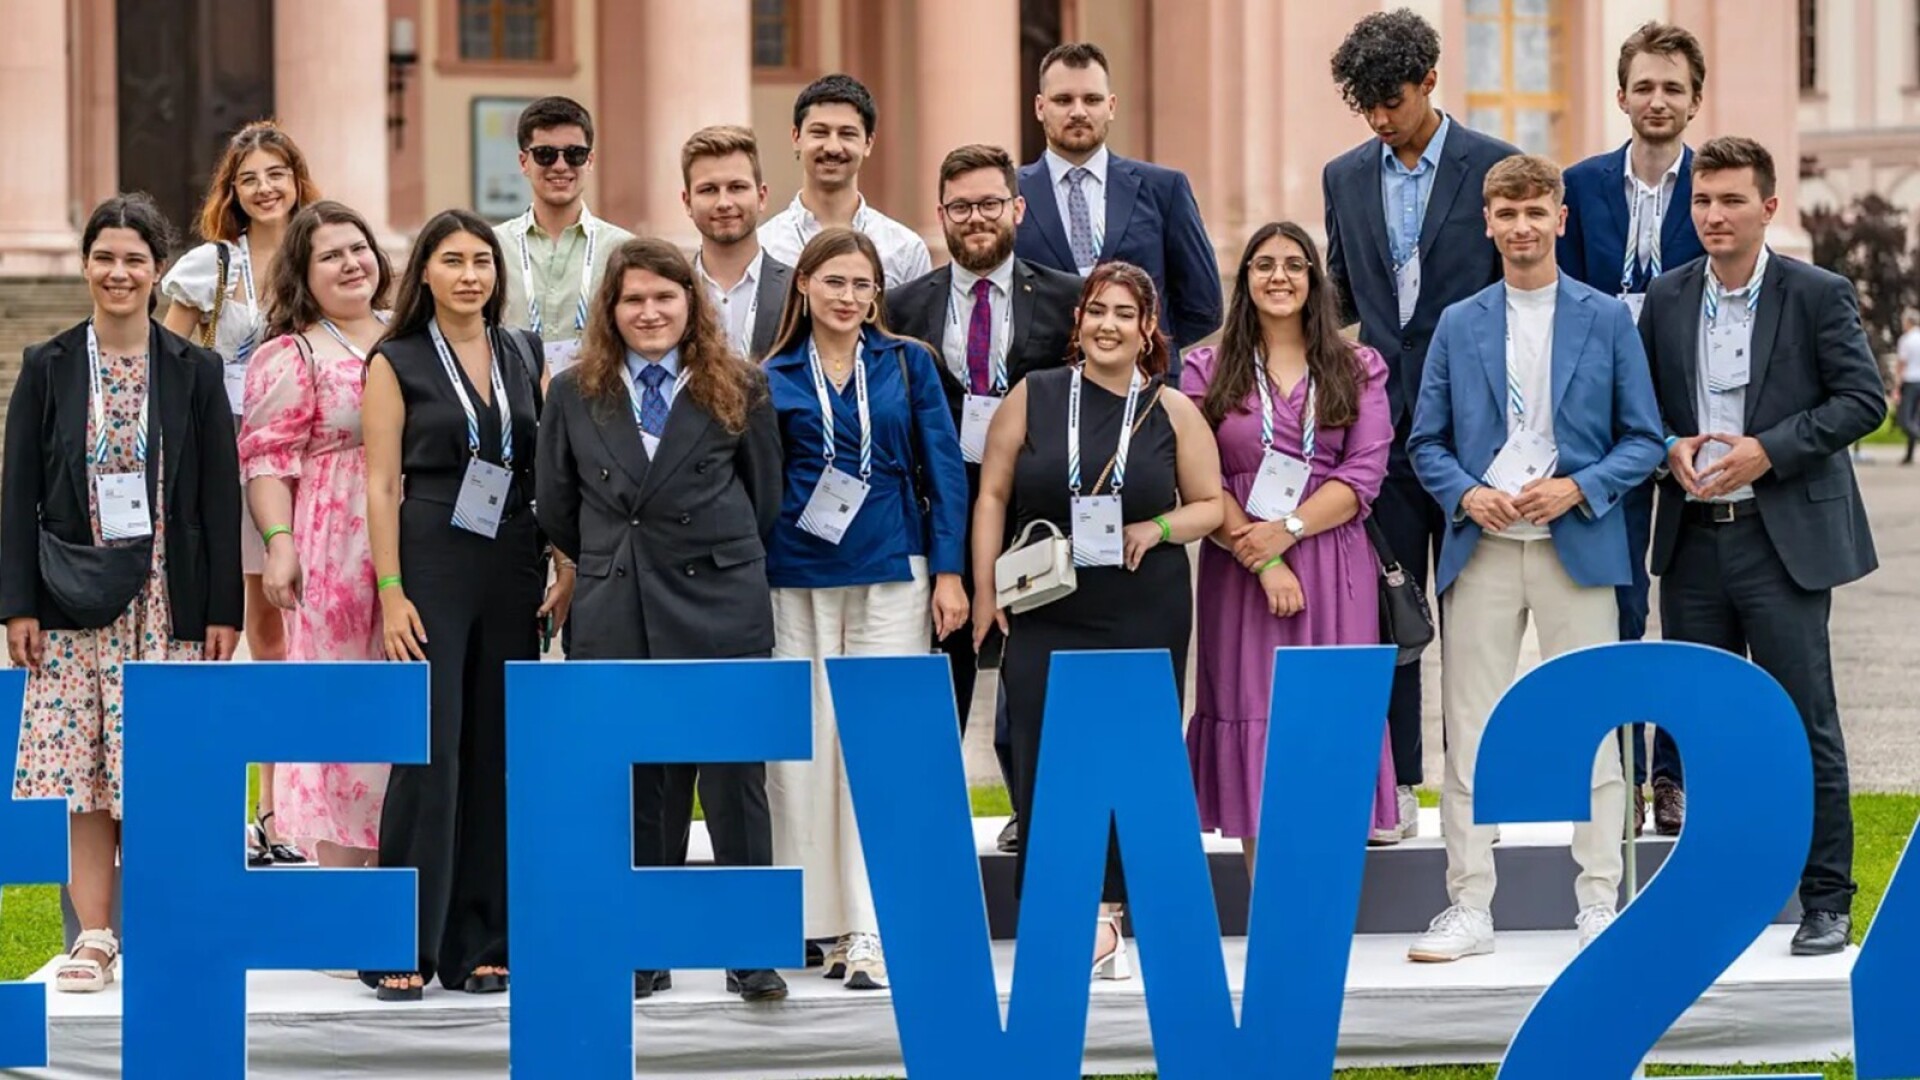 Tinerii români își fac vocea auzită în fața liderilor politici la Forumul European de la Wachau